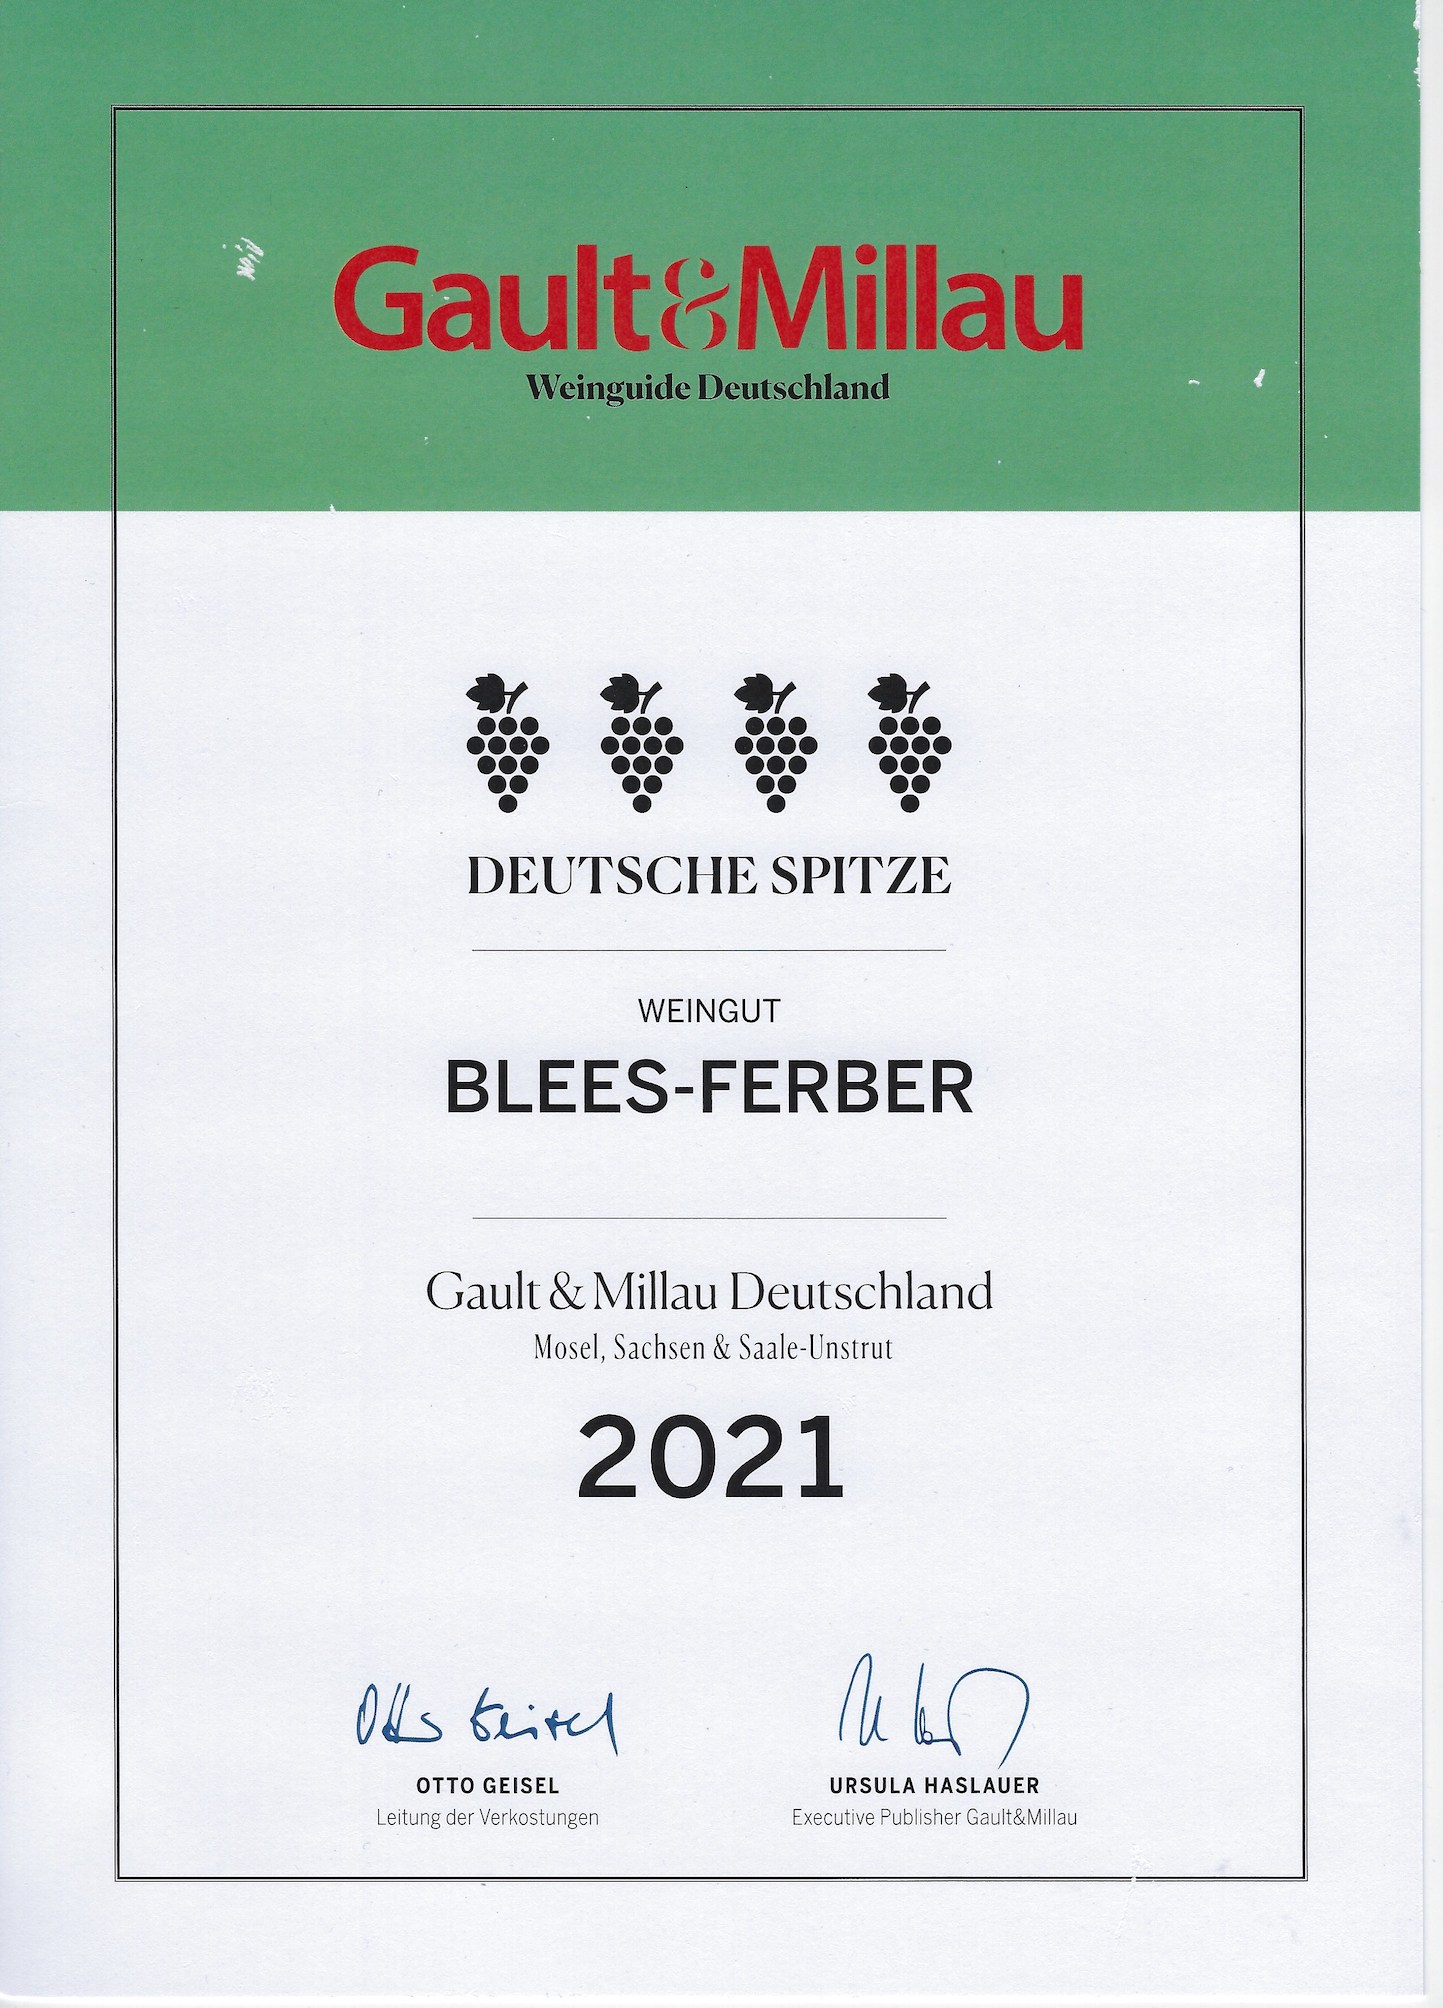 Gault & Millau Deutschland